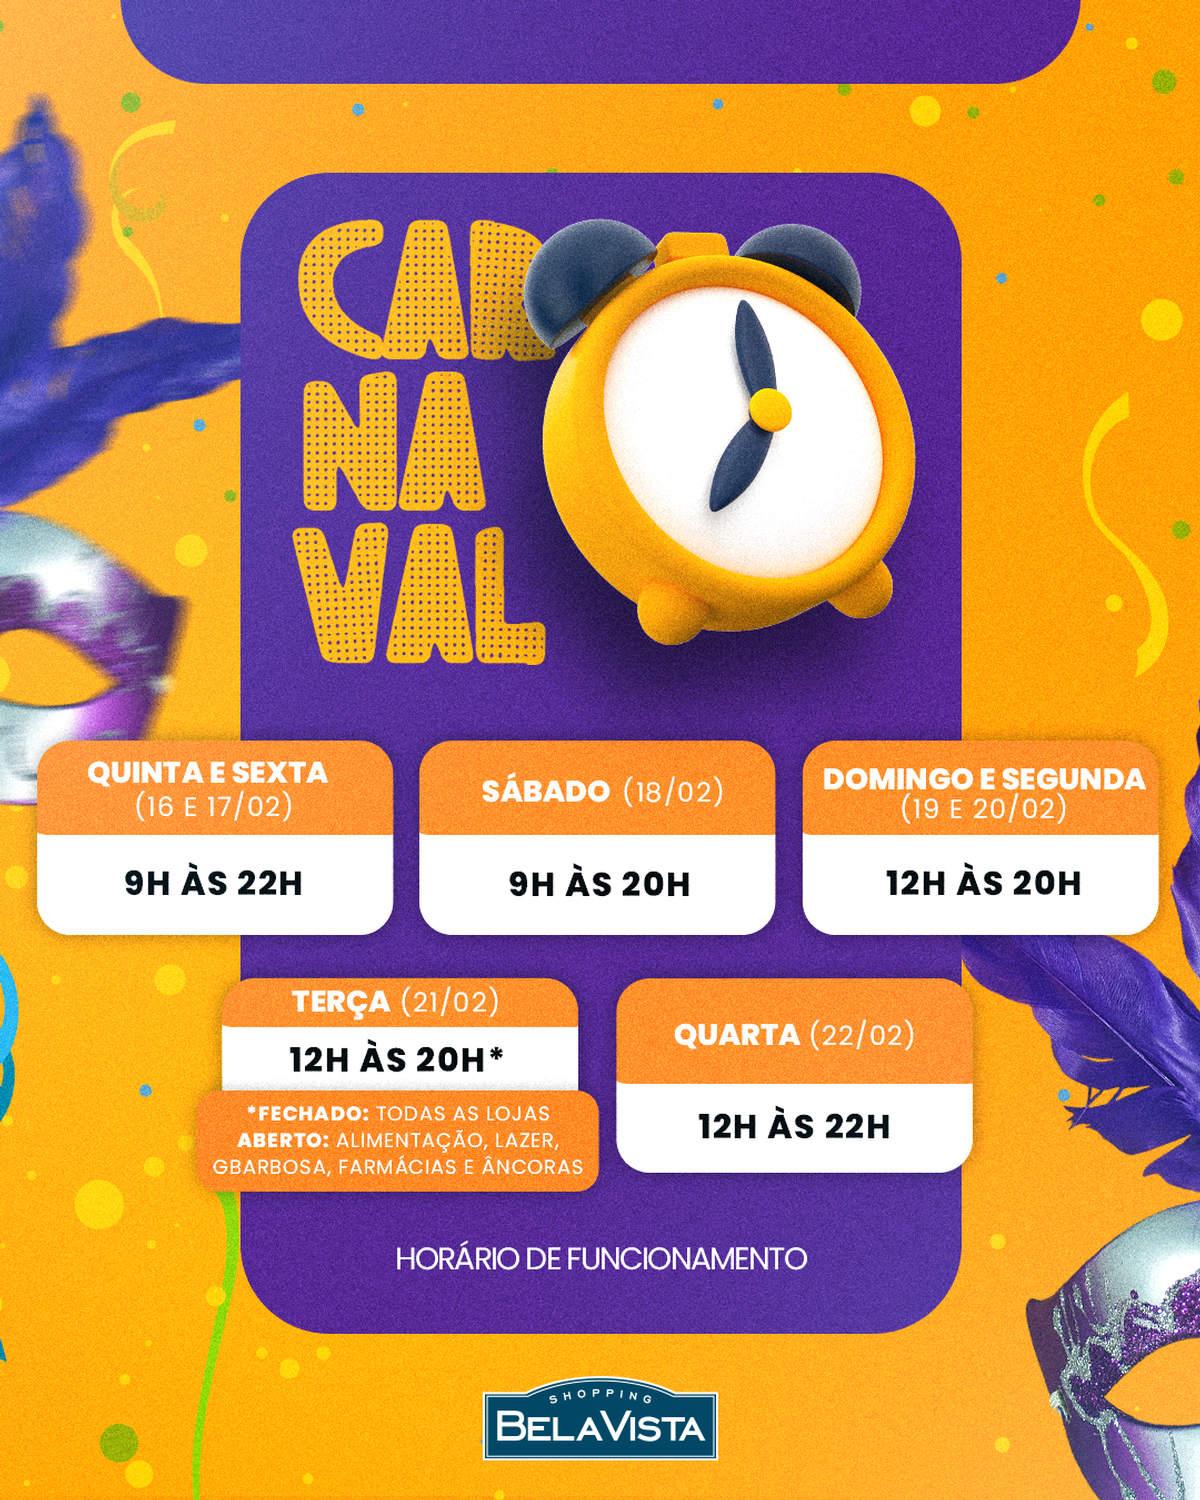 Confira o horário de funcionamento do Shopping Bela Vista no Carnaval